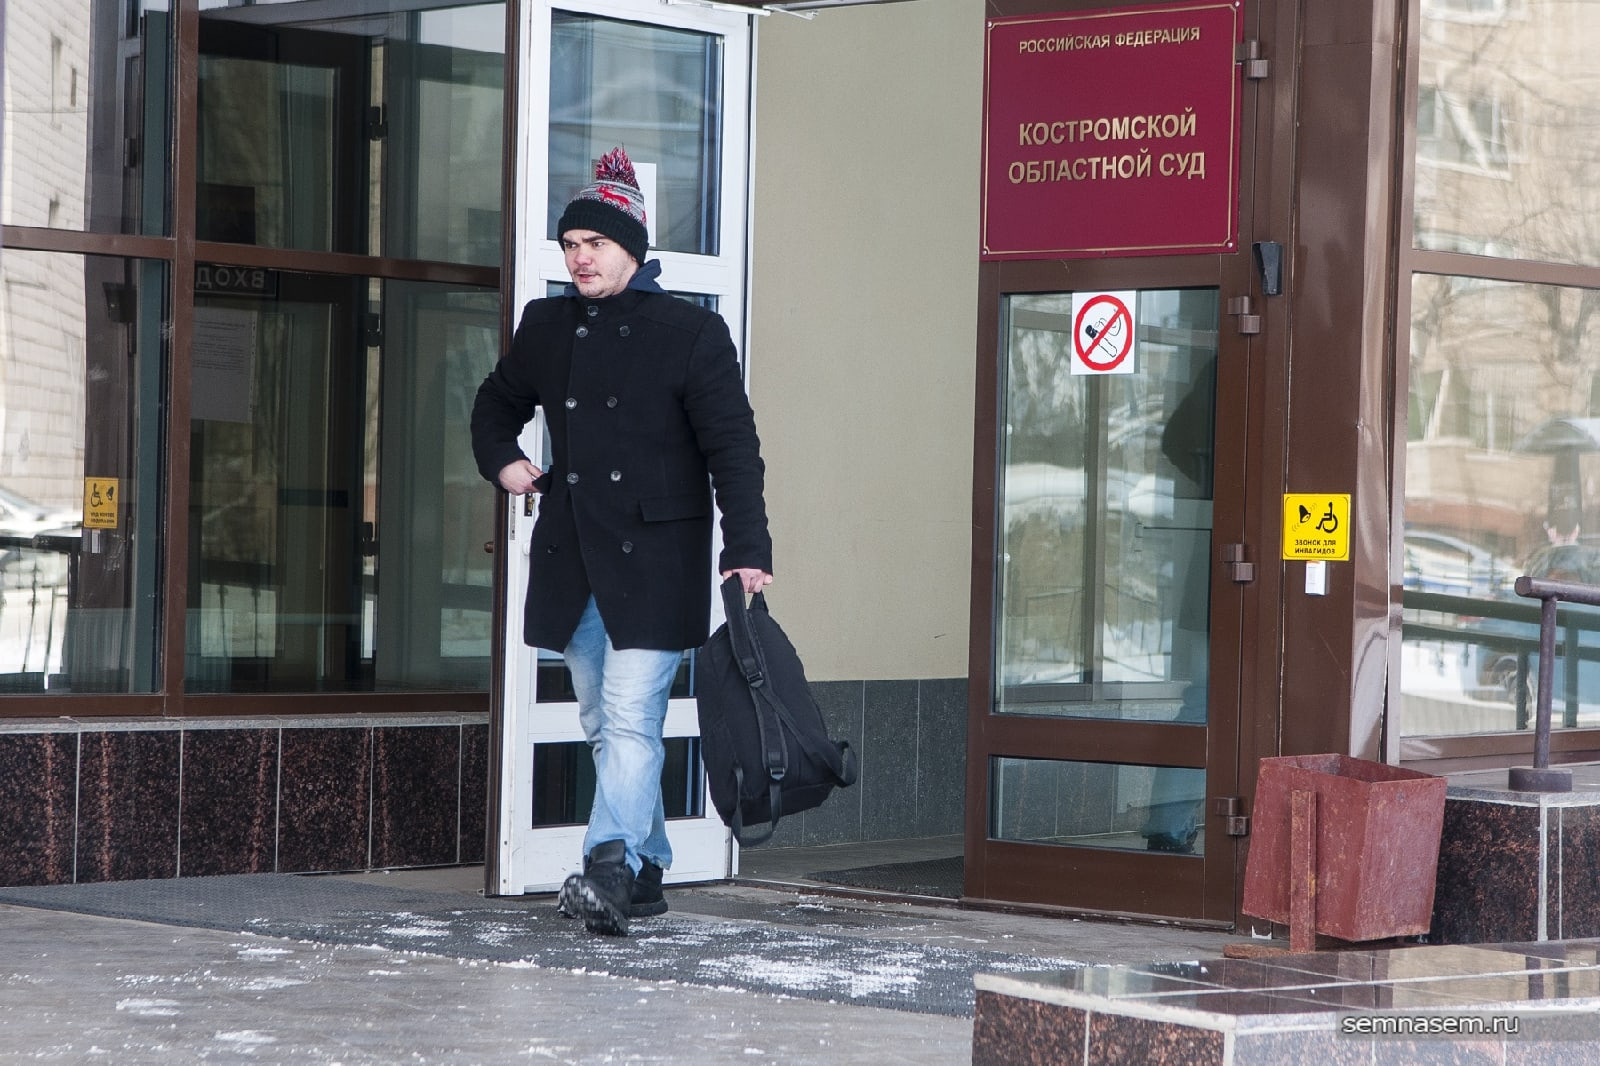 Активист из Костромы рассказал о практике местной полиции платить за информацию об оппозиции